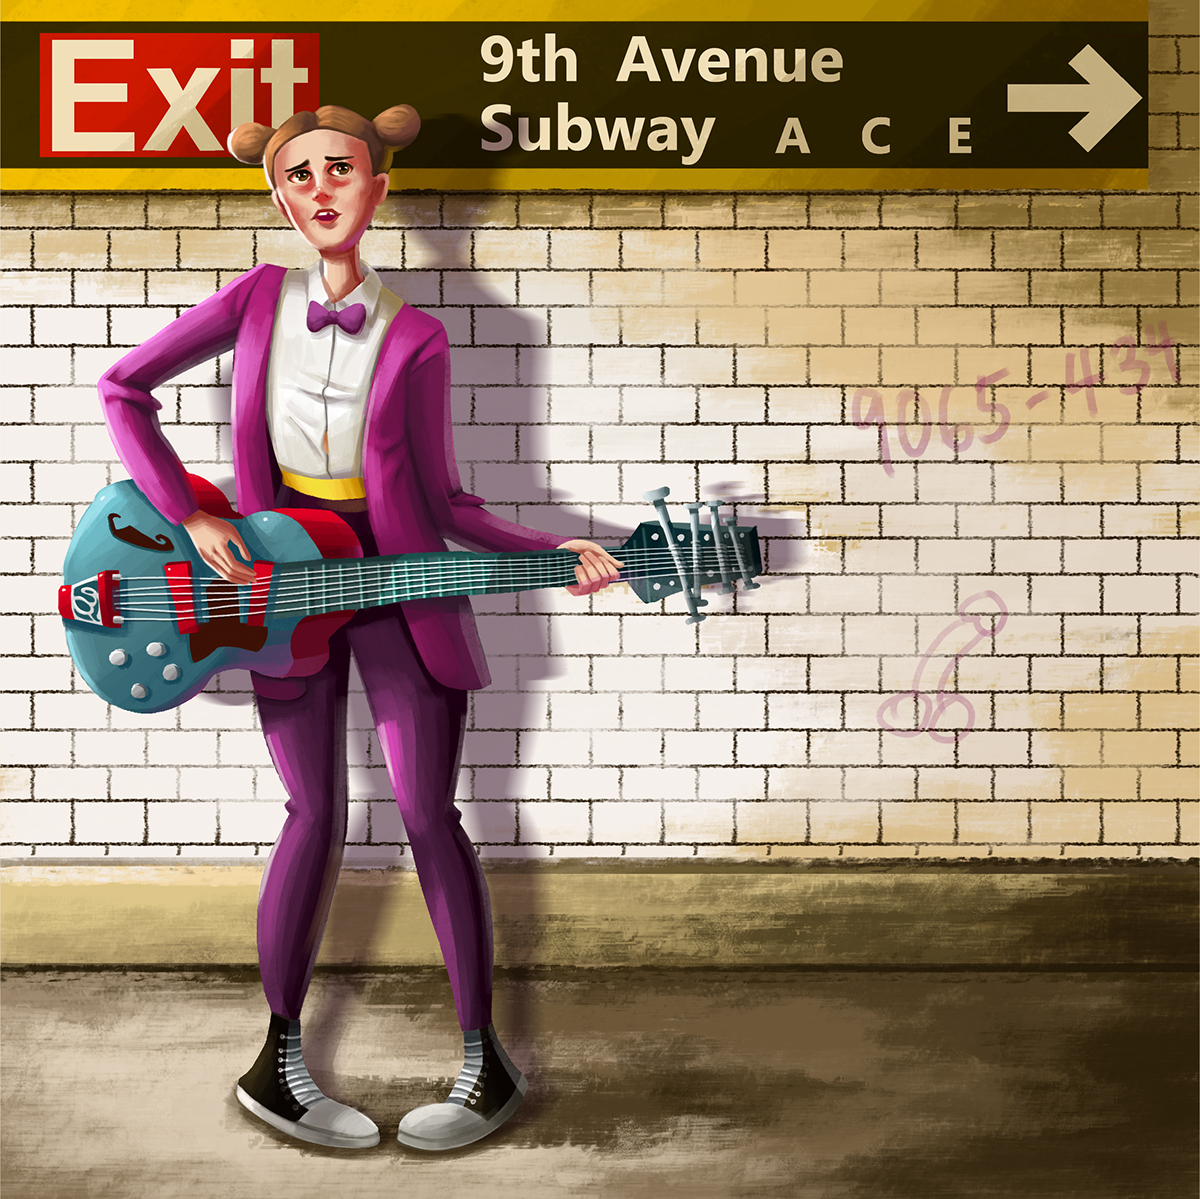 busker subway musician